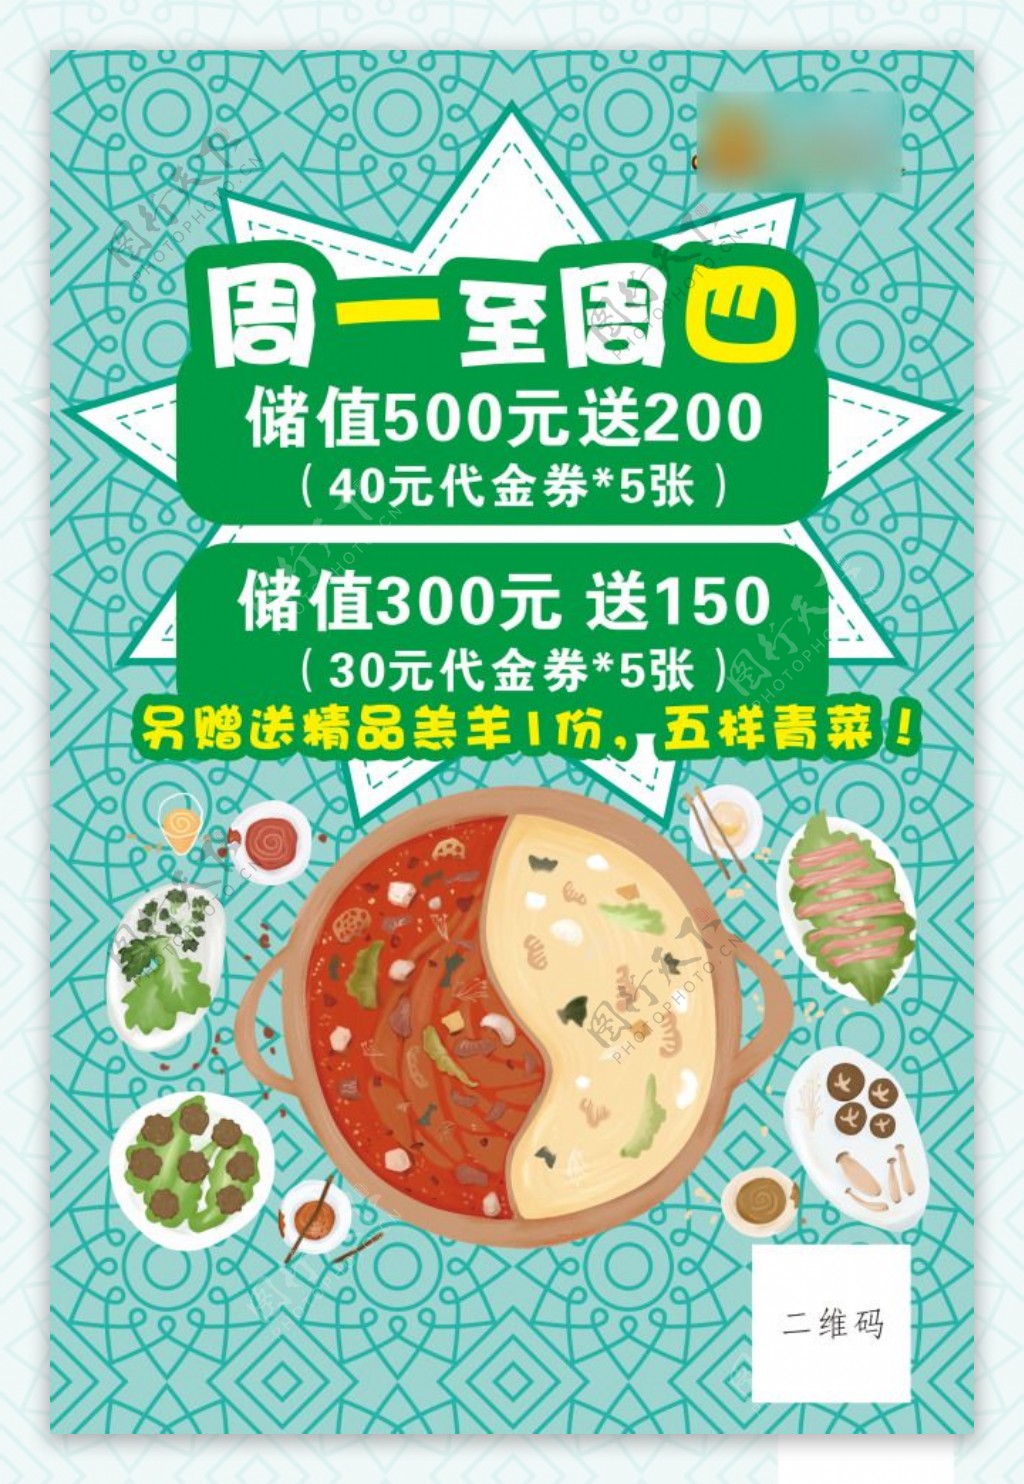 美食火锅活动海报